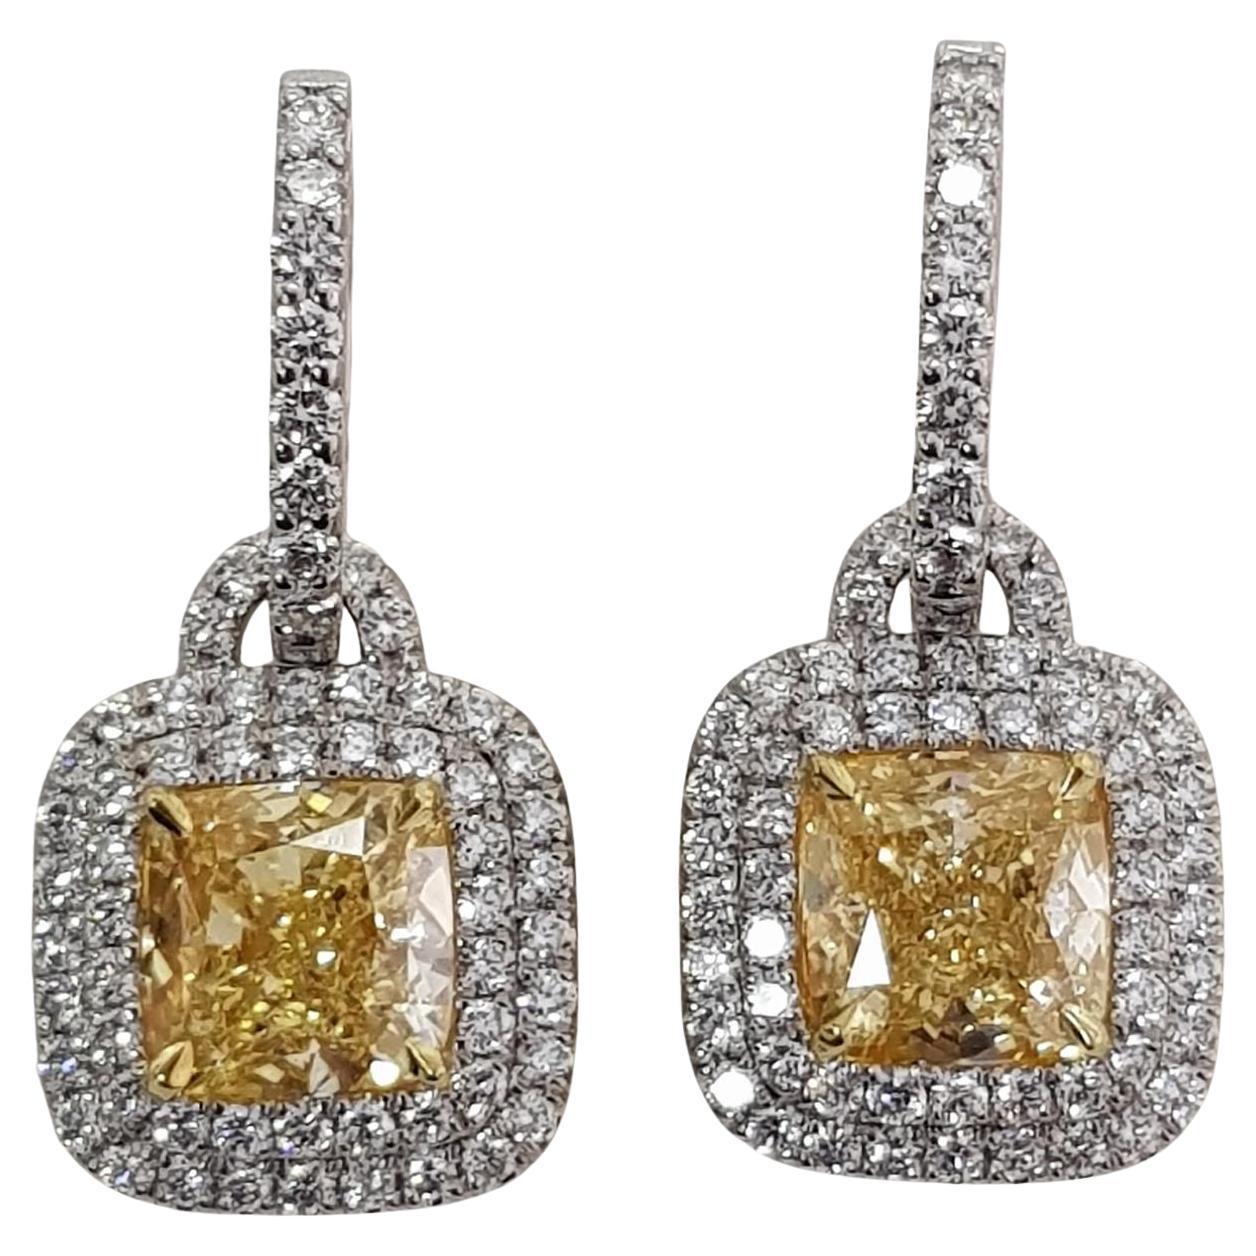 Boucles d'oreilles exquises en diamant coussin jaune 
5 carats
certifié GIA
VVS2 Clarté